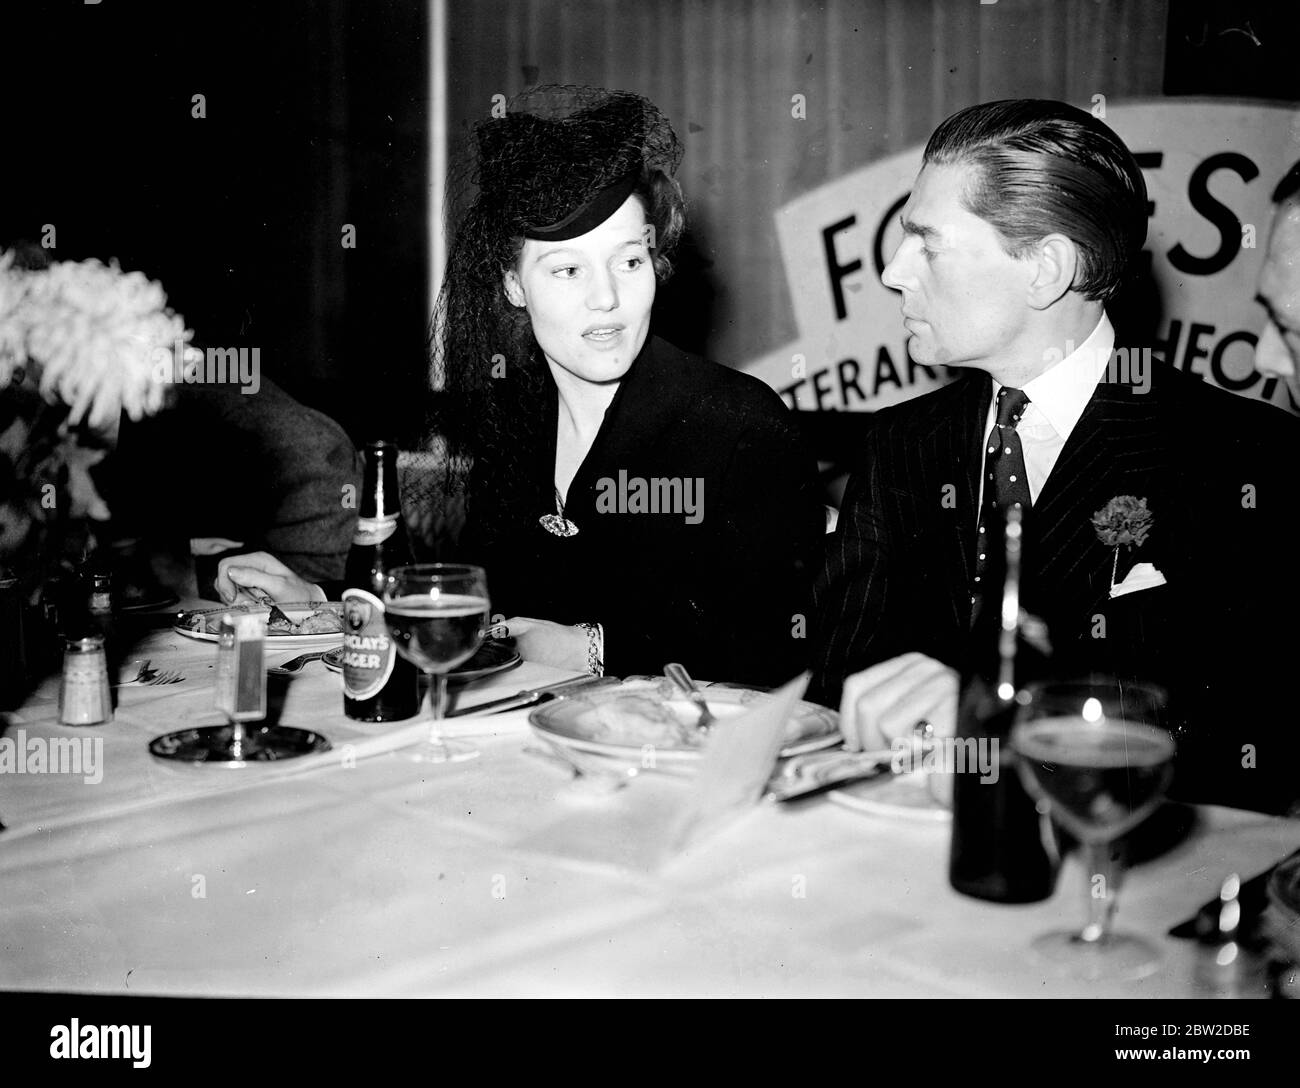 Miss Constance Cummings, die Schauspielerin, fotografierte beim 95. Foyles Literary Lunch im Grosvenor House, Park Lane, London. Viele andere Prominente des Staates, darunter Mistinguett, waren anwesend. 13. Oktober 1938 Stockfoto